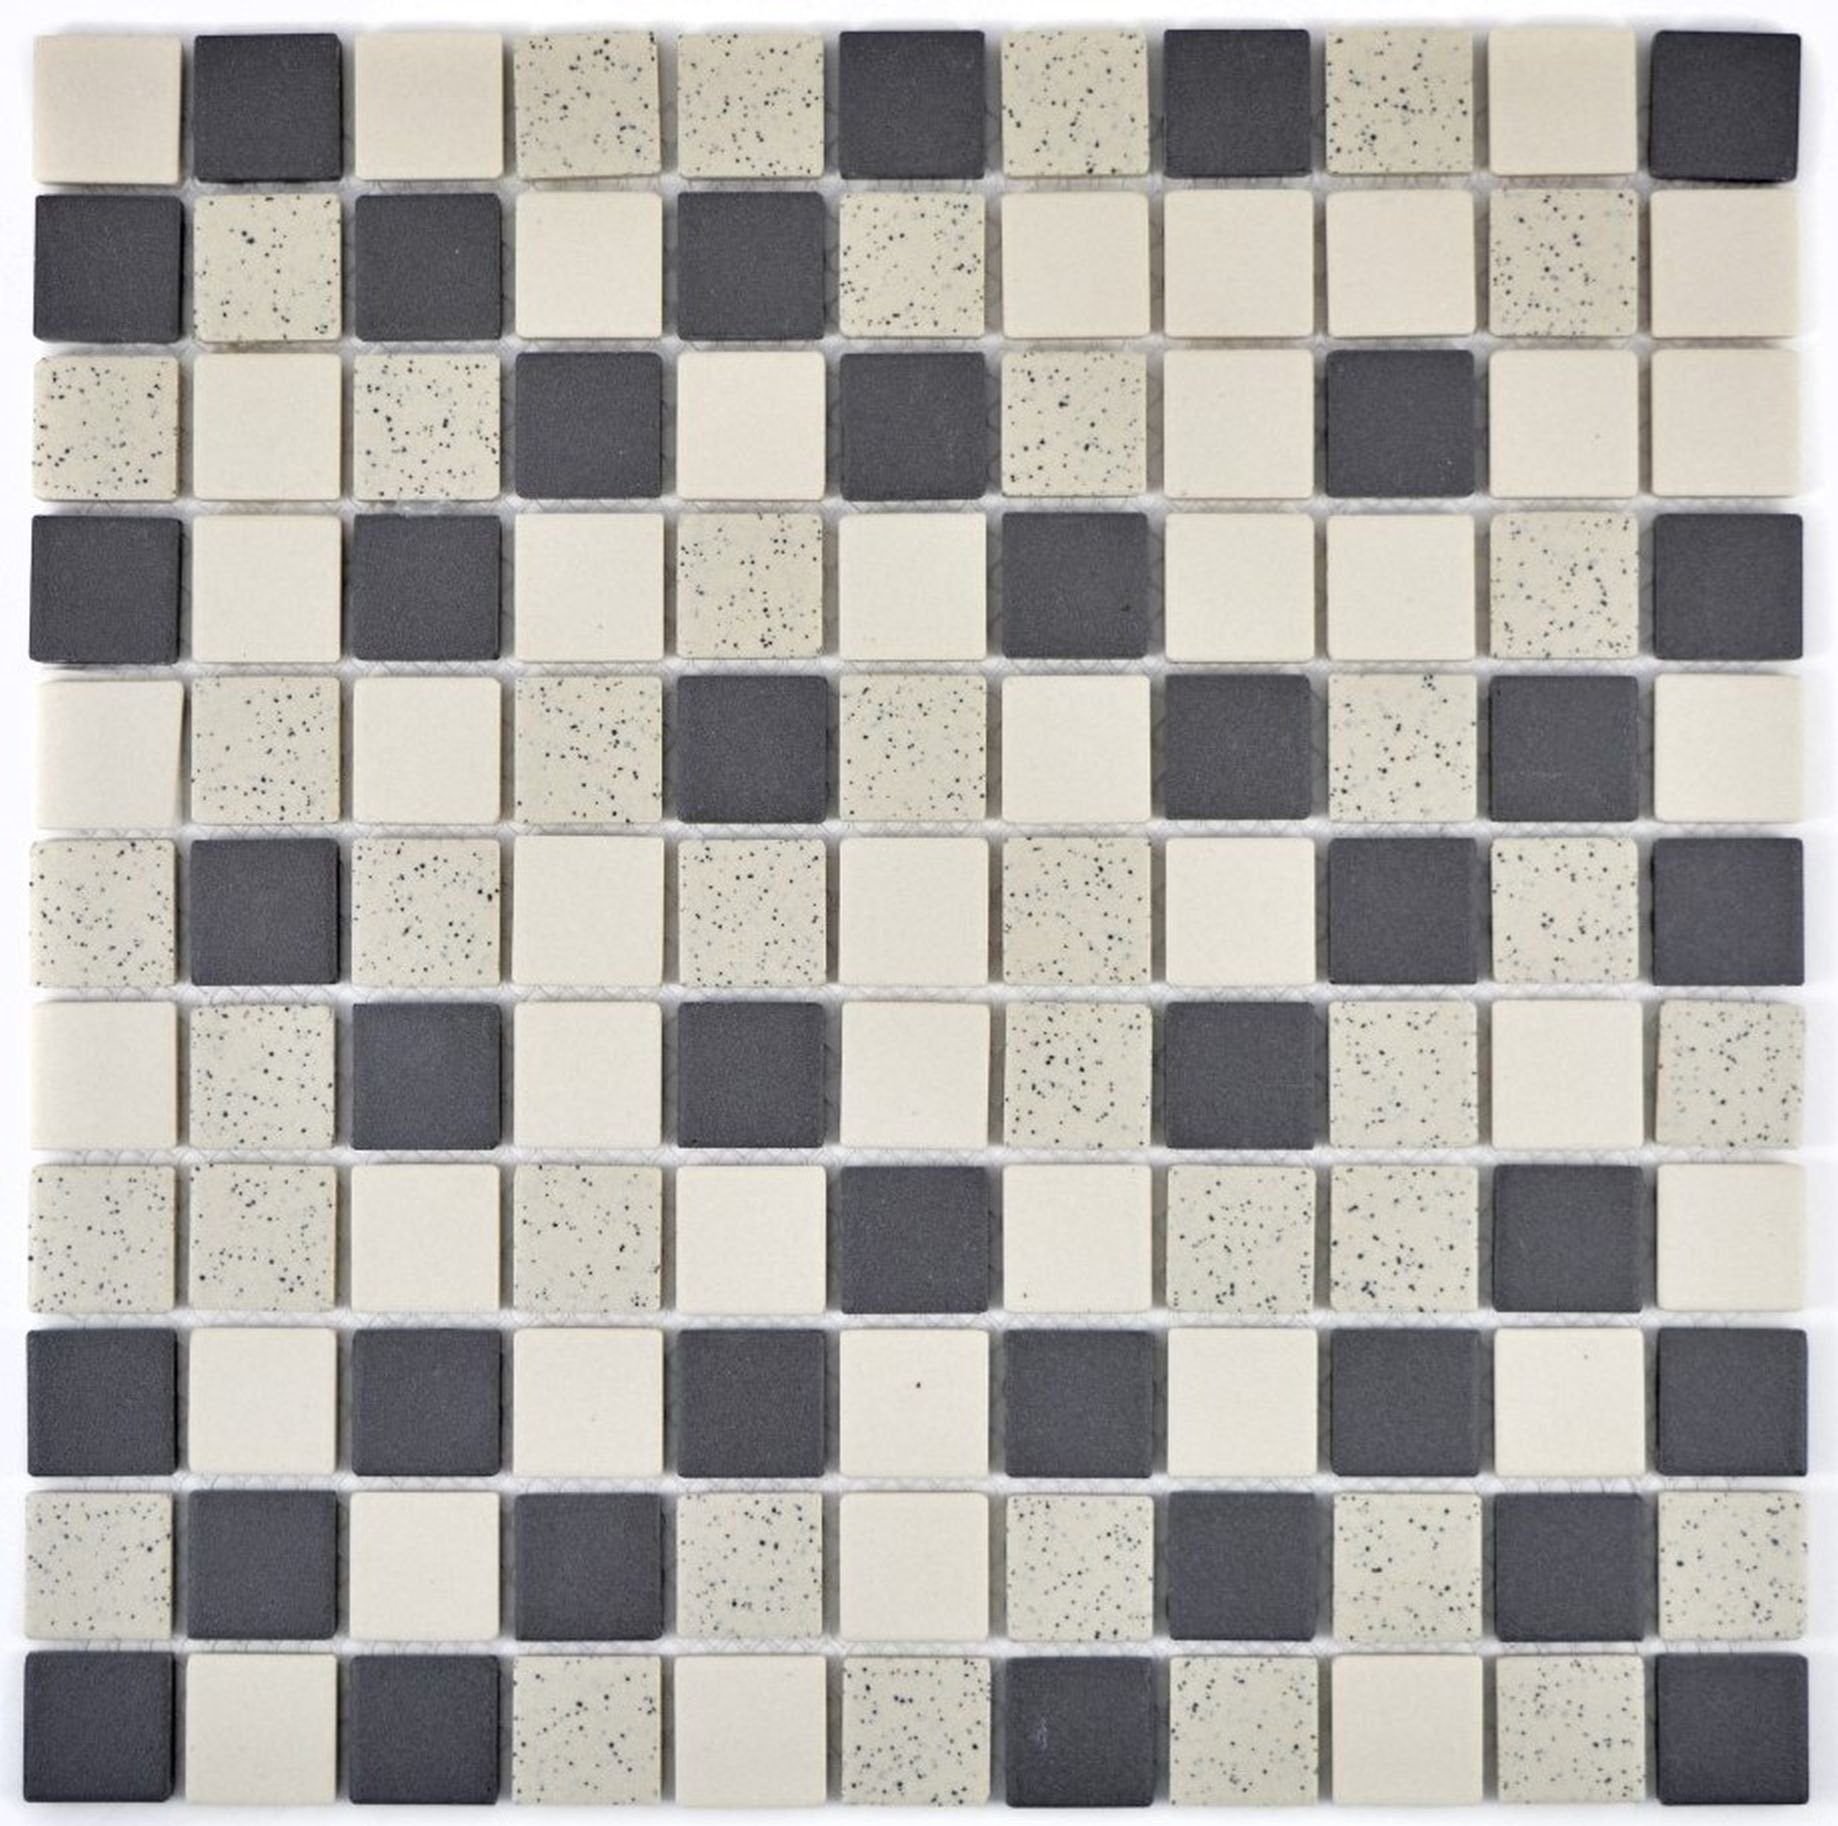 Mosani Mosaikfliesen Keramik Mosaik beige soft schwarz unglasiert gesprenkelt Boden Küche